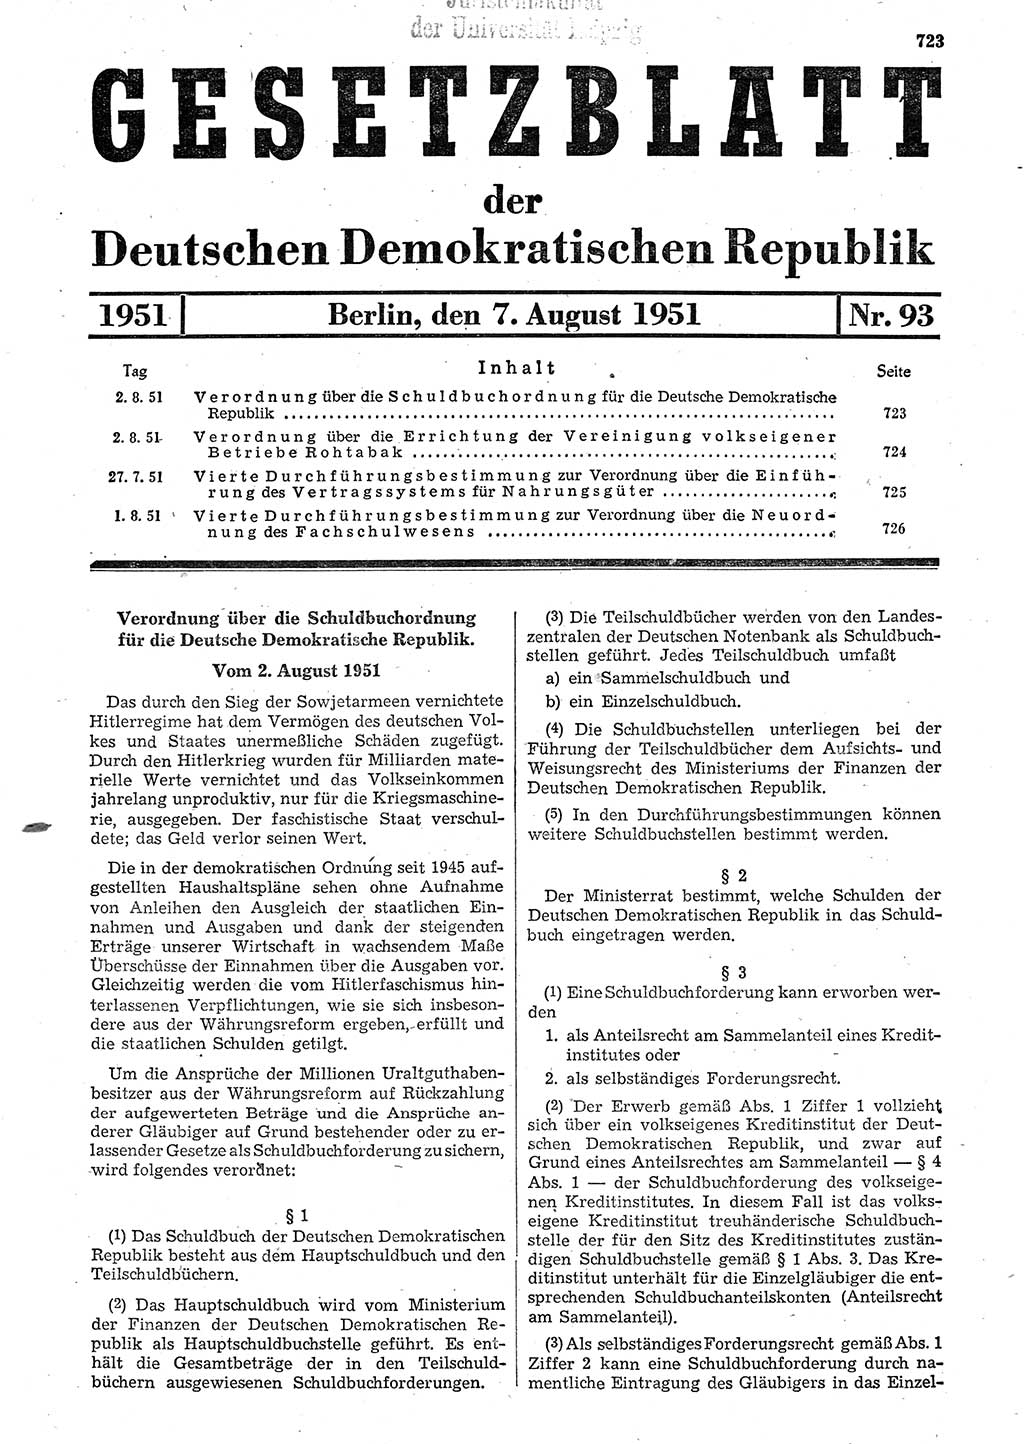 Gesetzblatt (GBl.) der Deutschen Demokratischen Republik (DDR) 1951, Seite 723 (GBl. DDR 1951, S. 723)